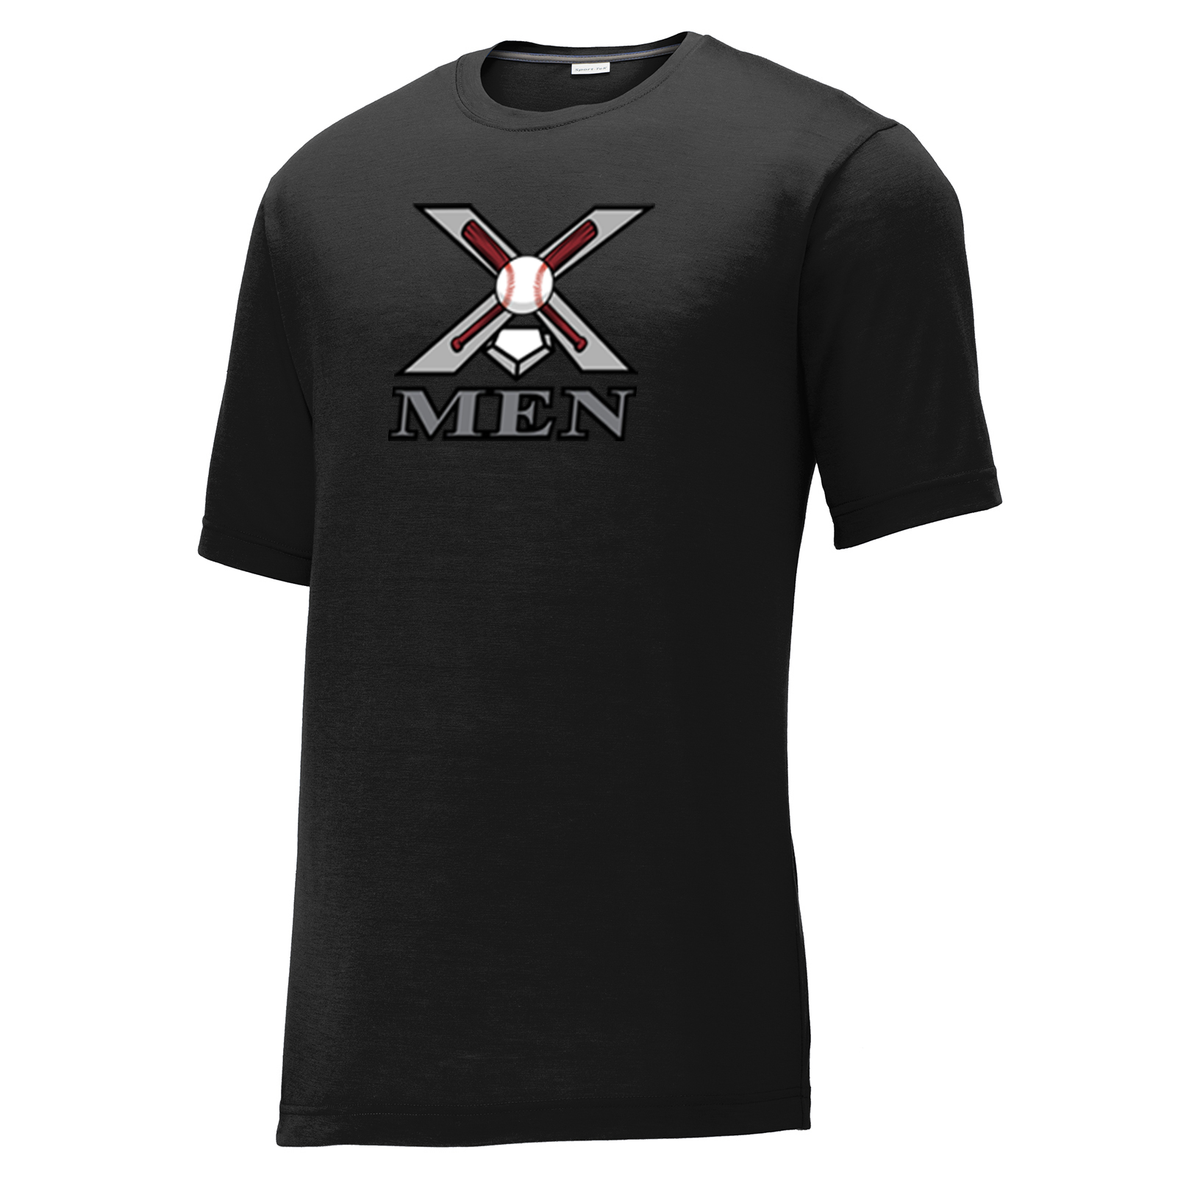 X Men Baseball CottonTouch Performance T-Shirt